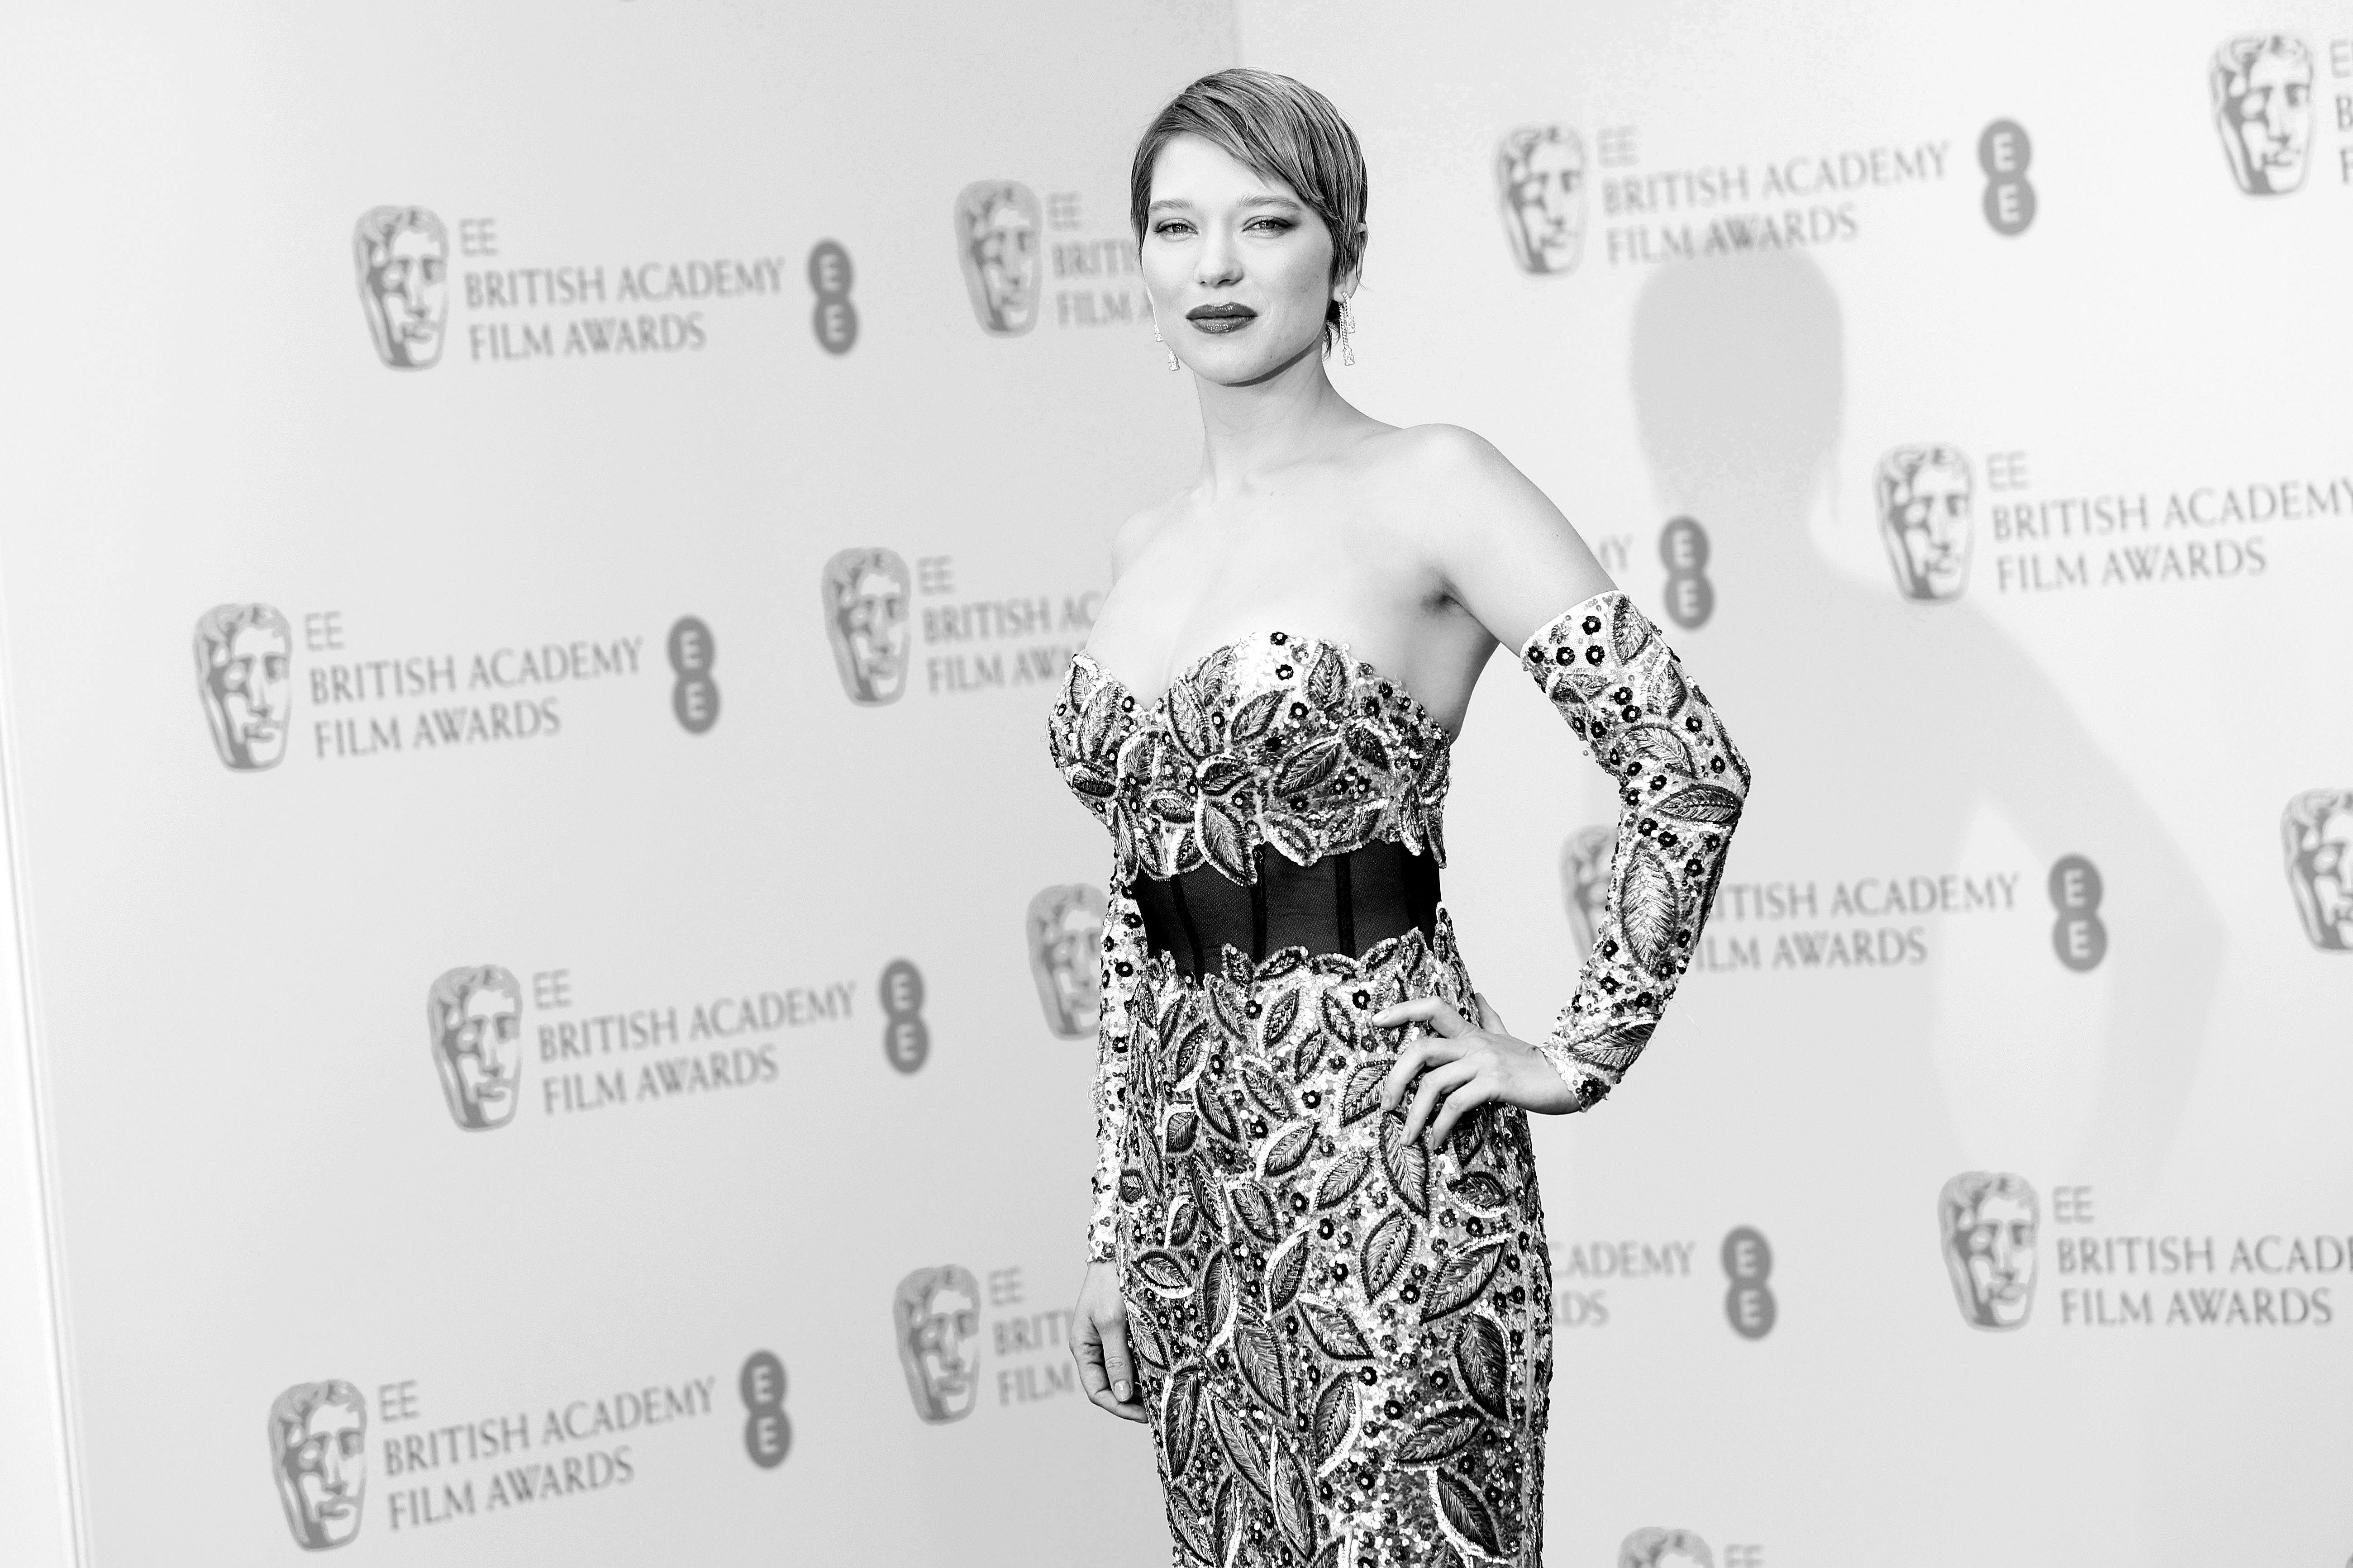 Léa Seydoux Daily — Léa Seydoux before the BAFTA awards, March 2022.